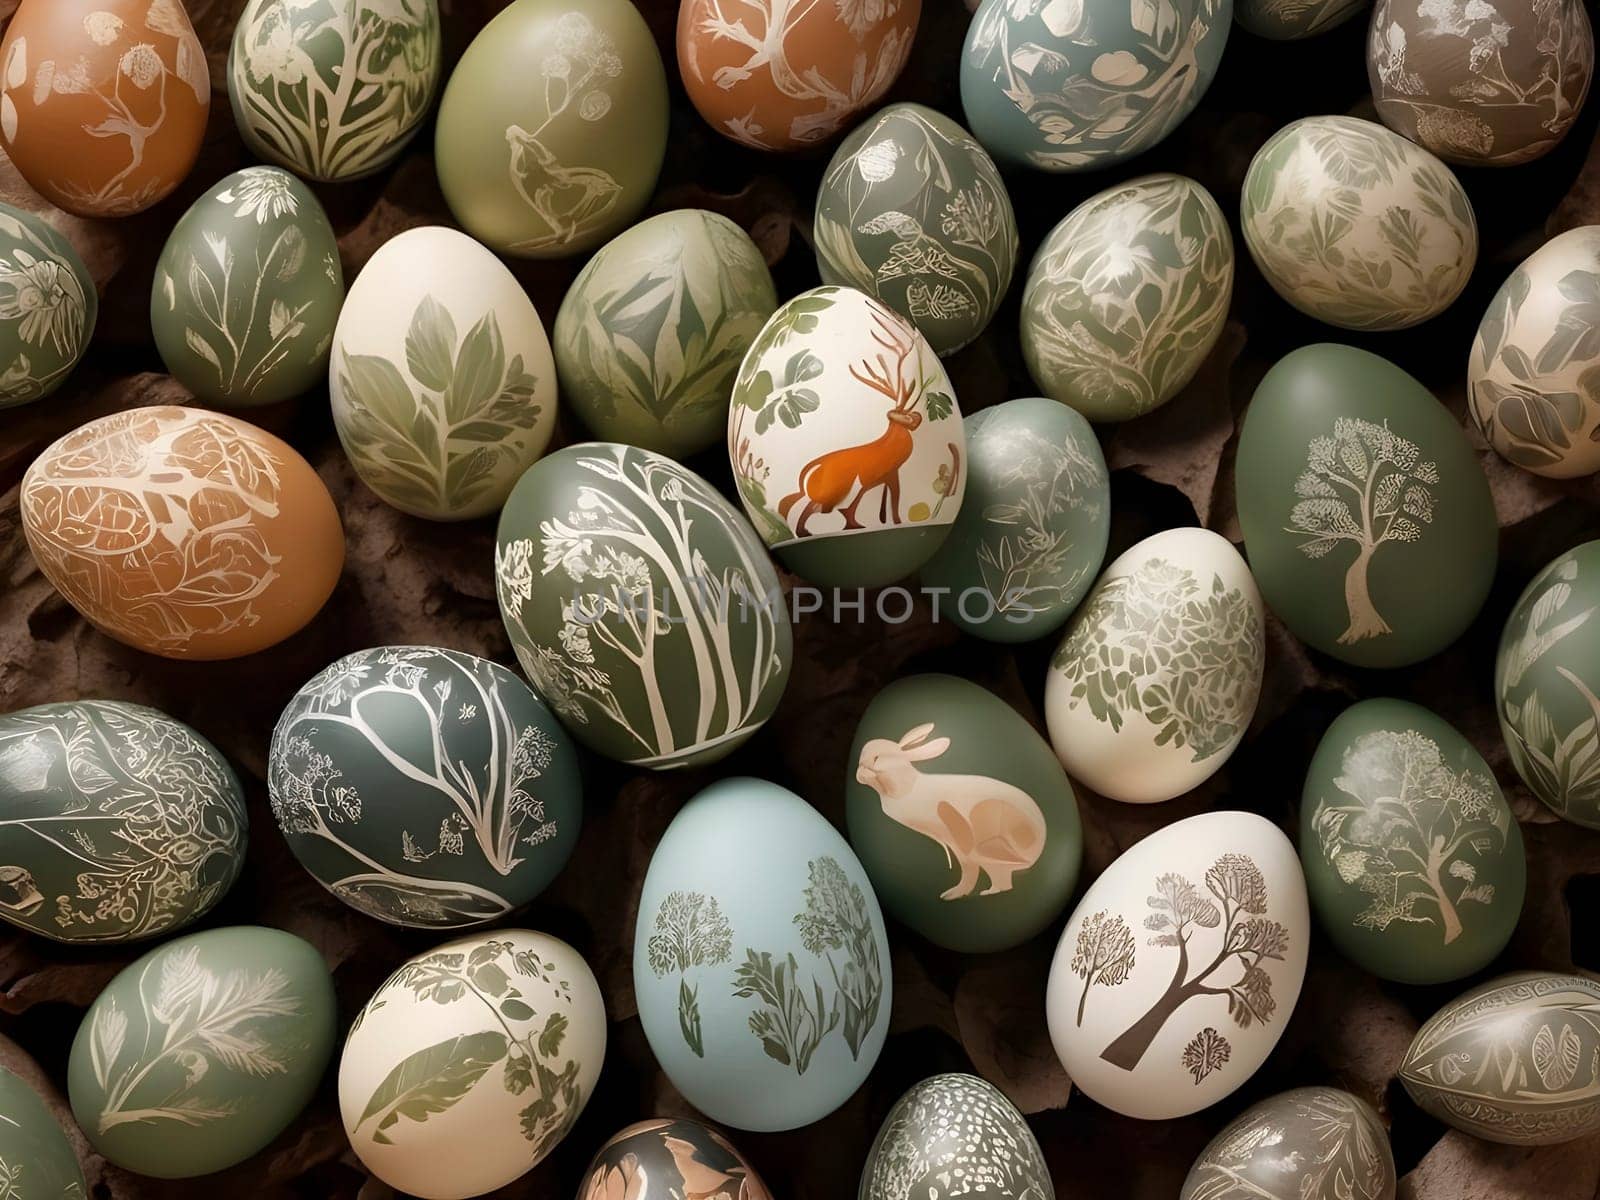 Wildlife Wonders: Egg Art Celebrating Endangered Animals and Ecology.